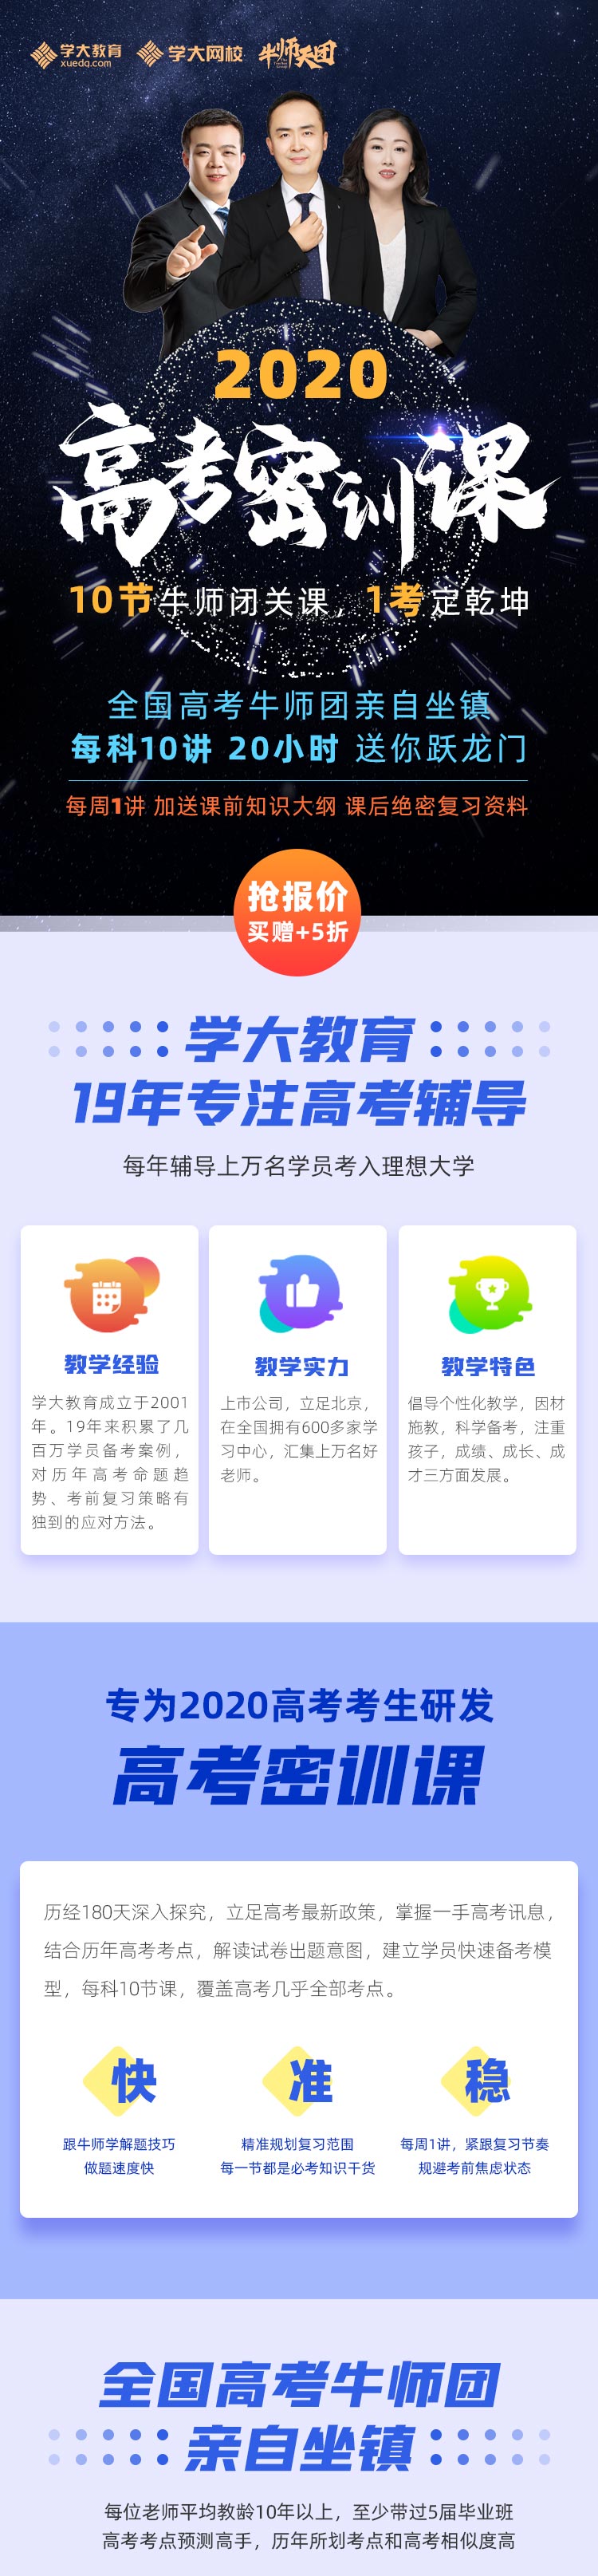 https://xdo-storage.oss-cn-beijing.aliyuncs.com/2020/03/09/EFxzj4HHFiV1aBvJdmEjKaz9B3xXOtwdEfTc60uI.jpeg